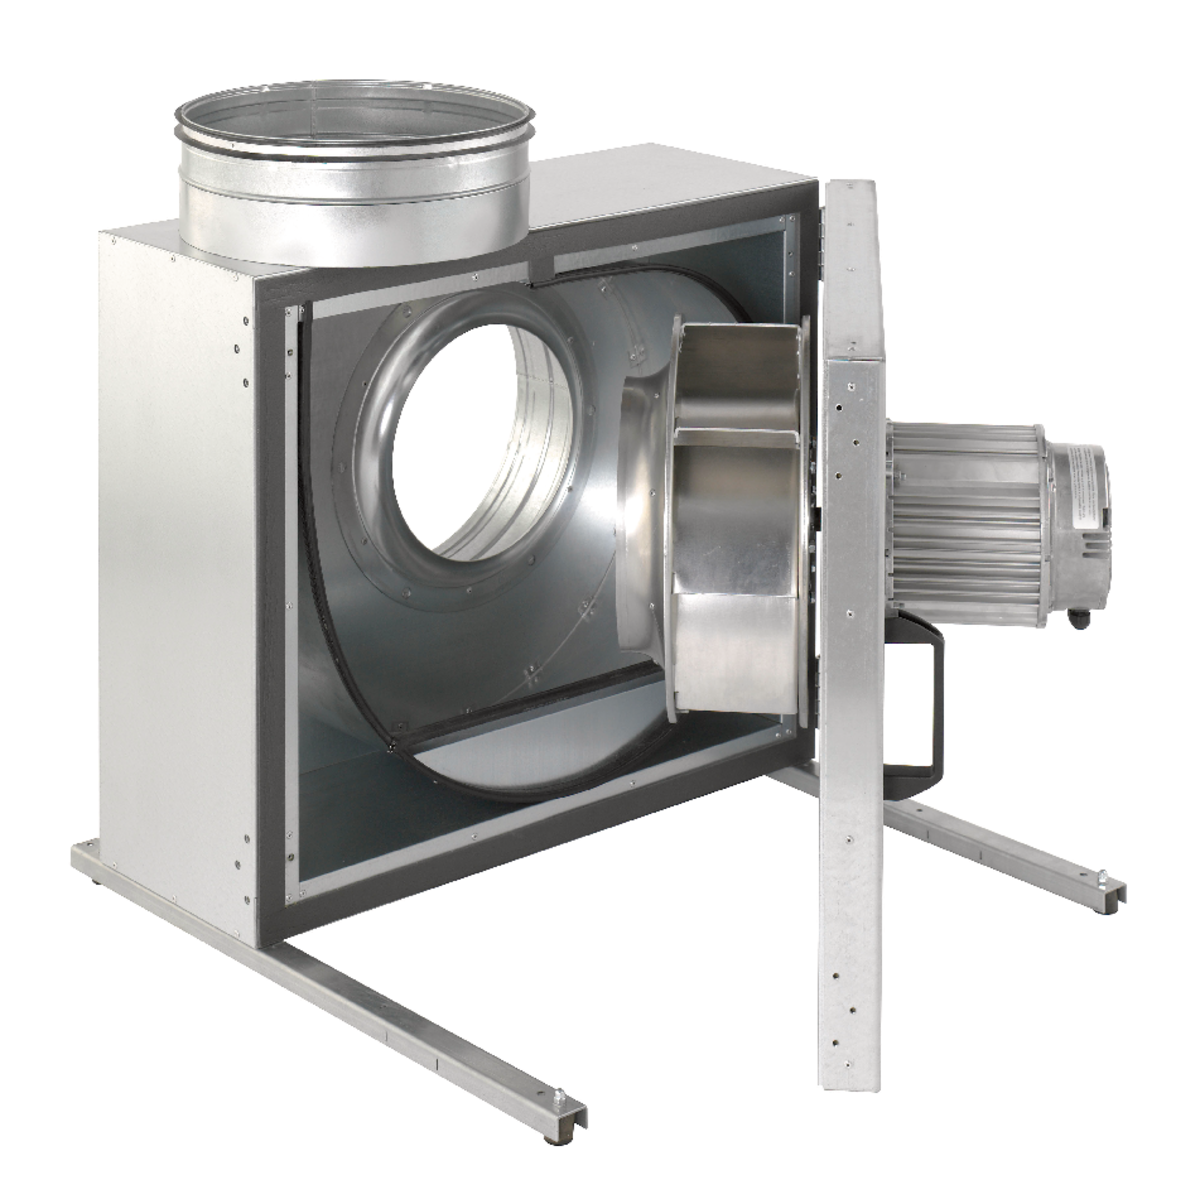 KBR - Ventilatori centrifughi - Ventilatori - Prodotti - Systemair